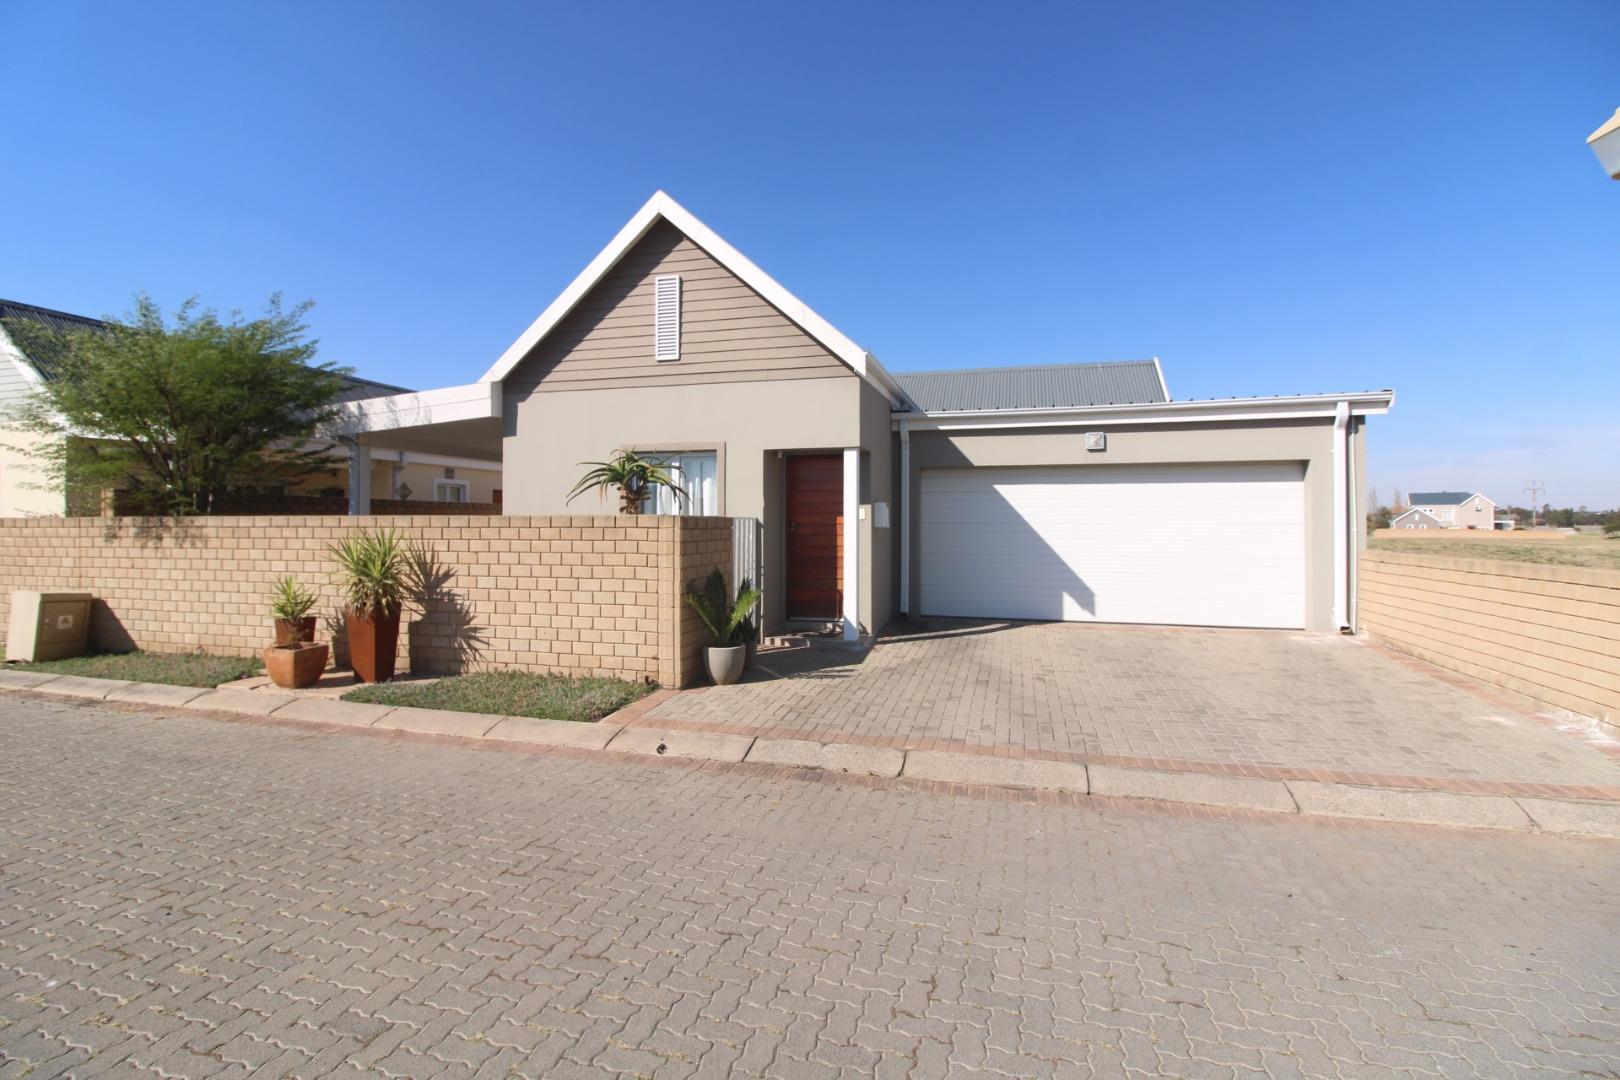 3 Bedroom  House for Sale in Vereeniging - Gauteng